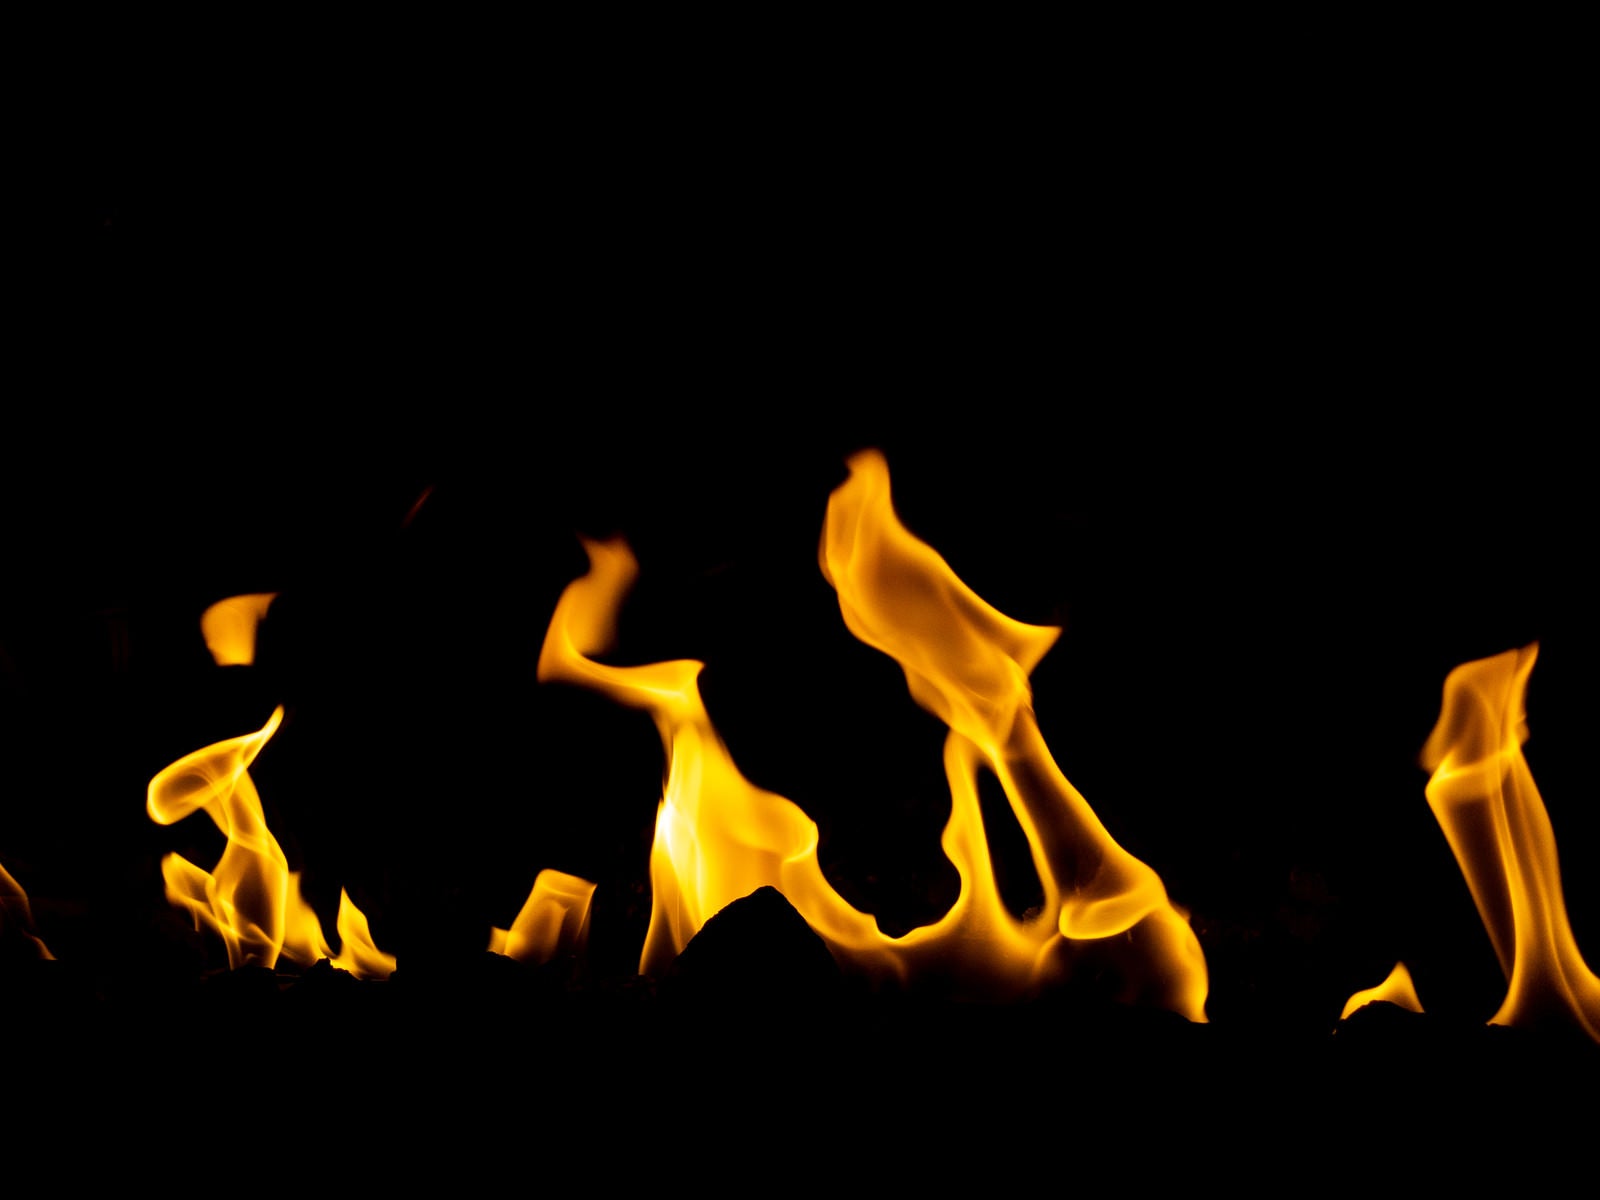 「火災」の写真